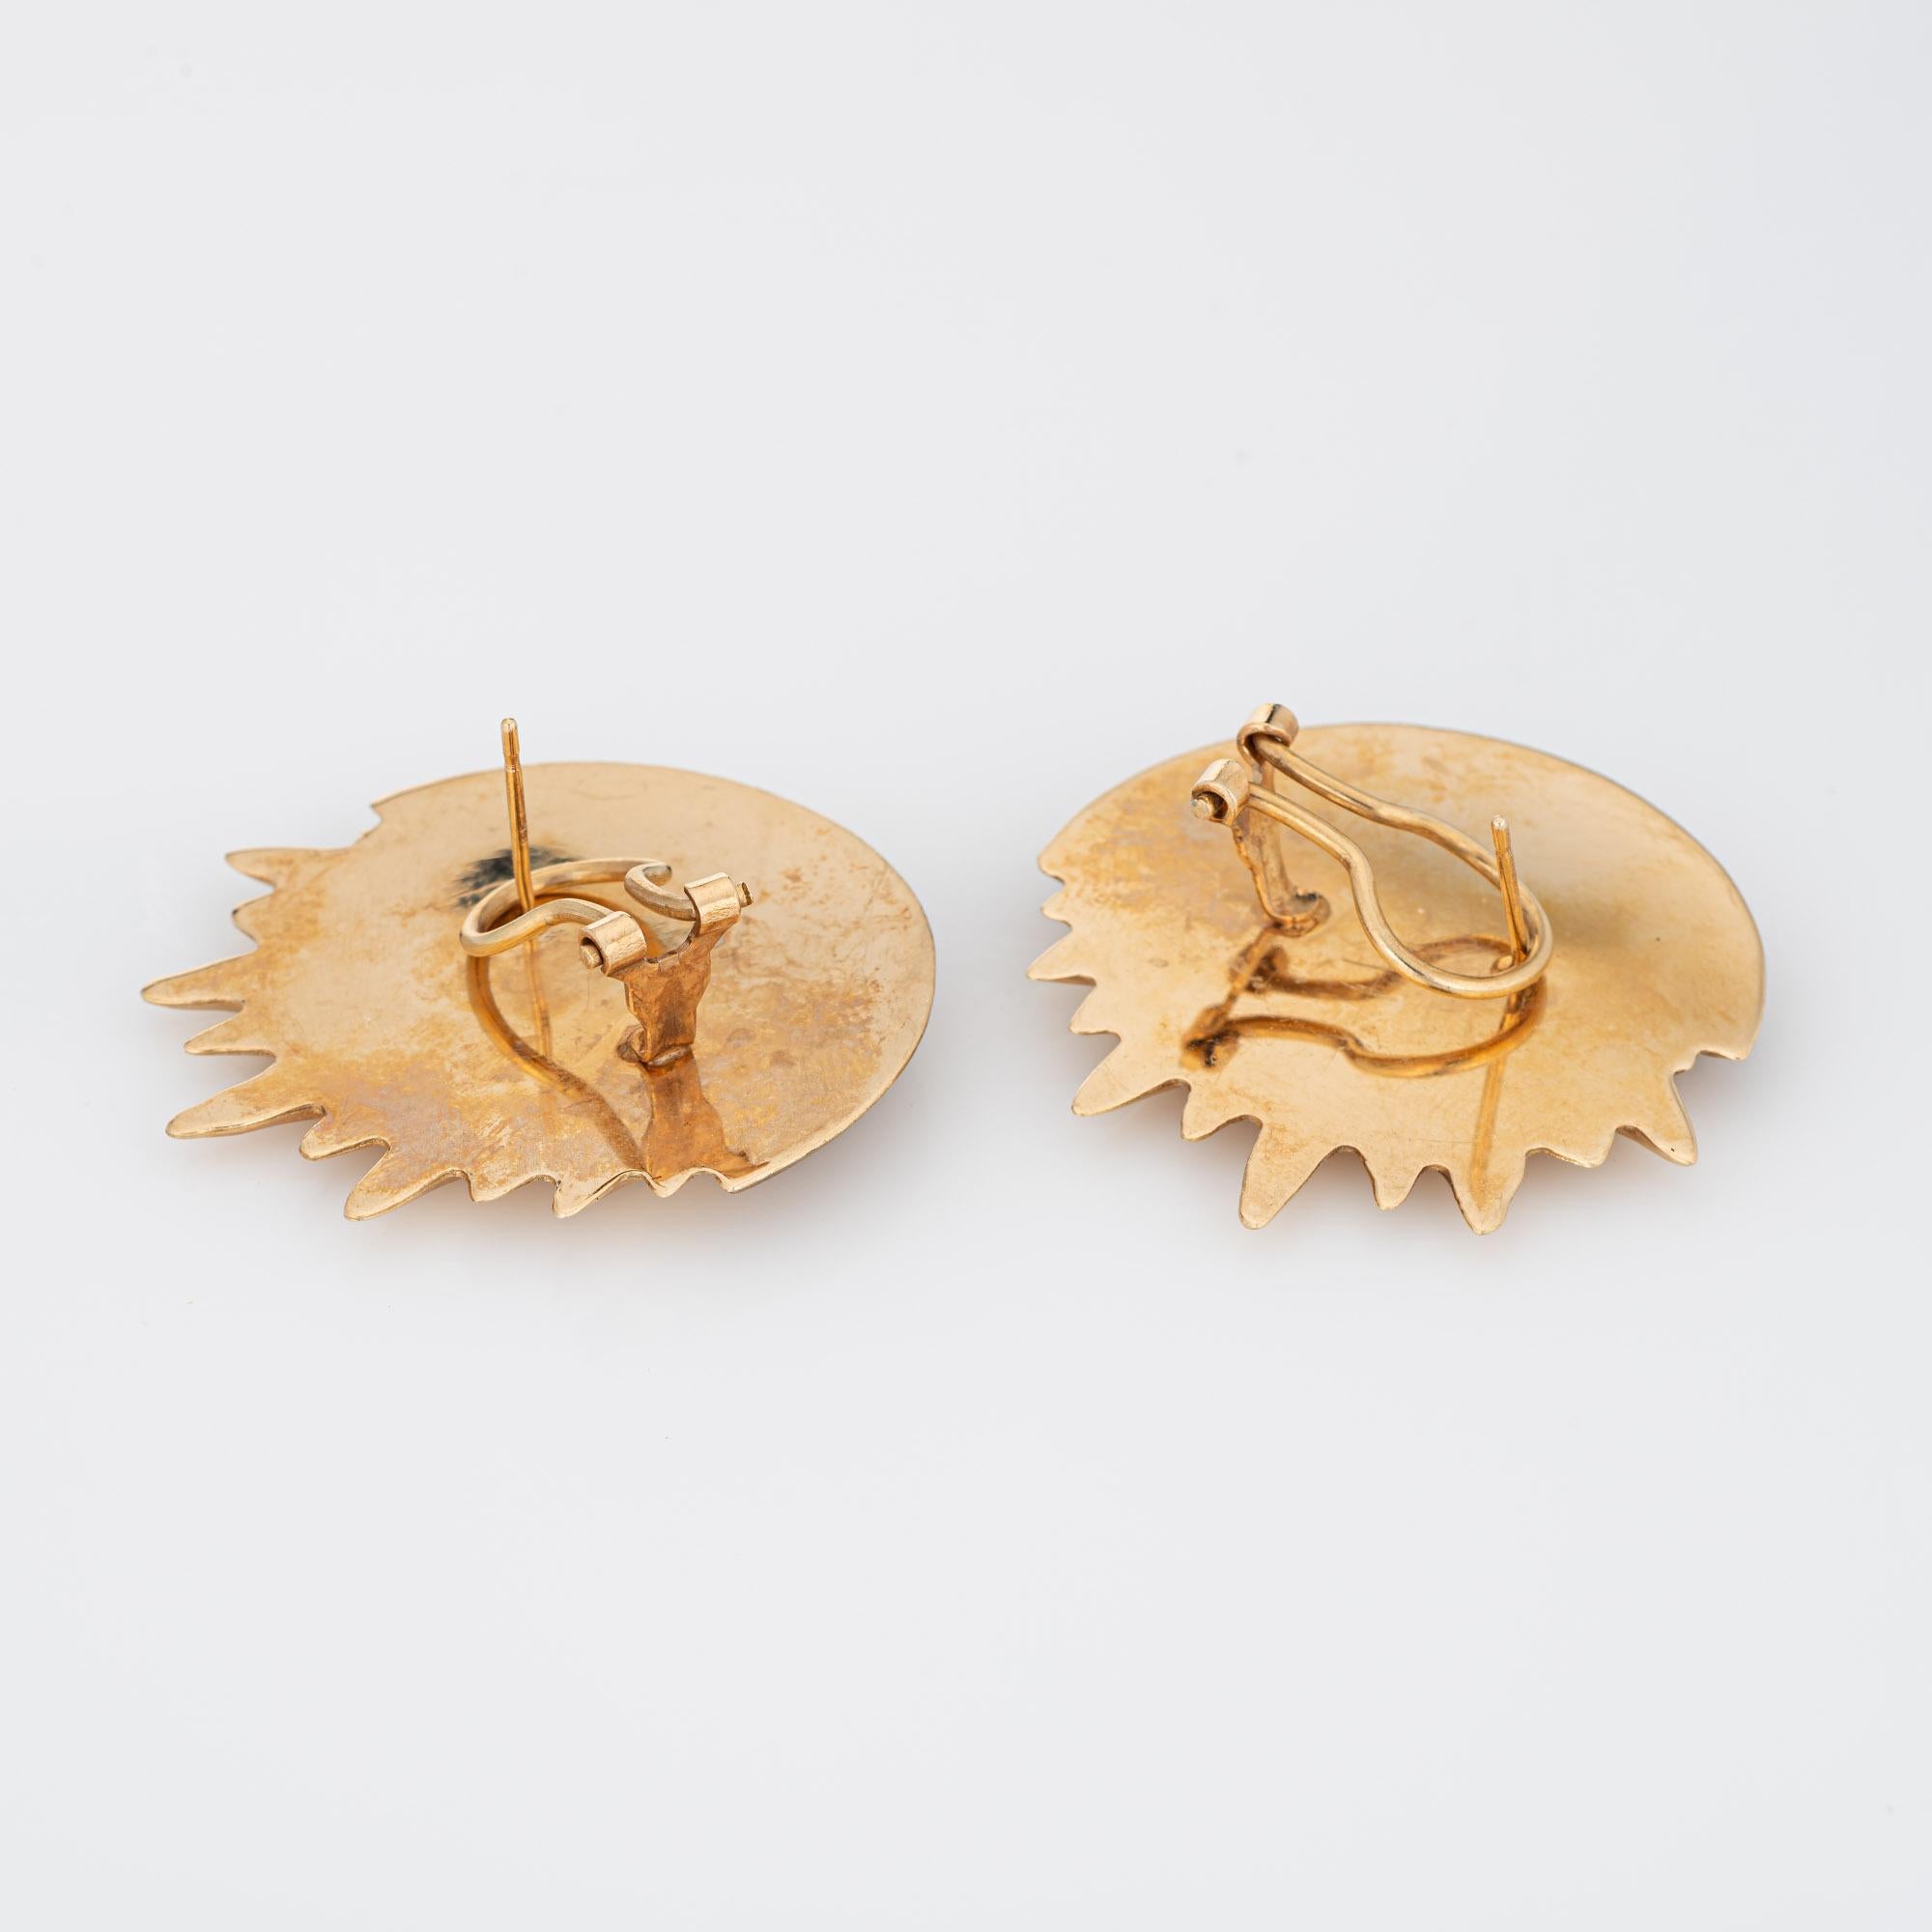 Fein detailliertes Paar Vintage-Ohrringe aus 14-karätigem Gelbgold (circa 1990er Jahre) mit Sonnenschliff und Mondsichel. 

Die bezaubernden Ohrringe sind mit einem Durchmesser von 1 1/4 Zoll sehr groß und machen einen tollen Eindruck. Das hohle